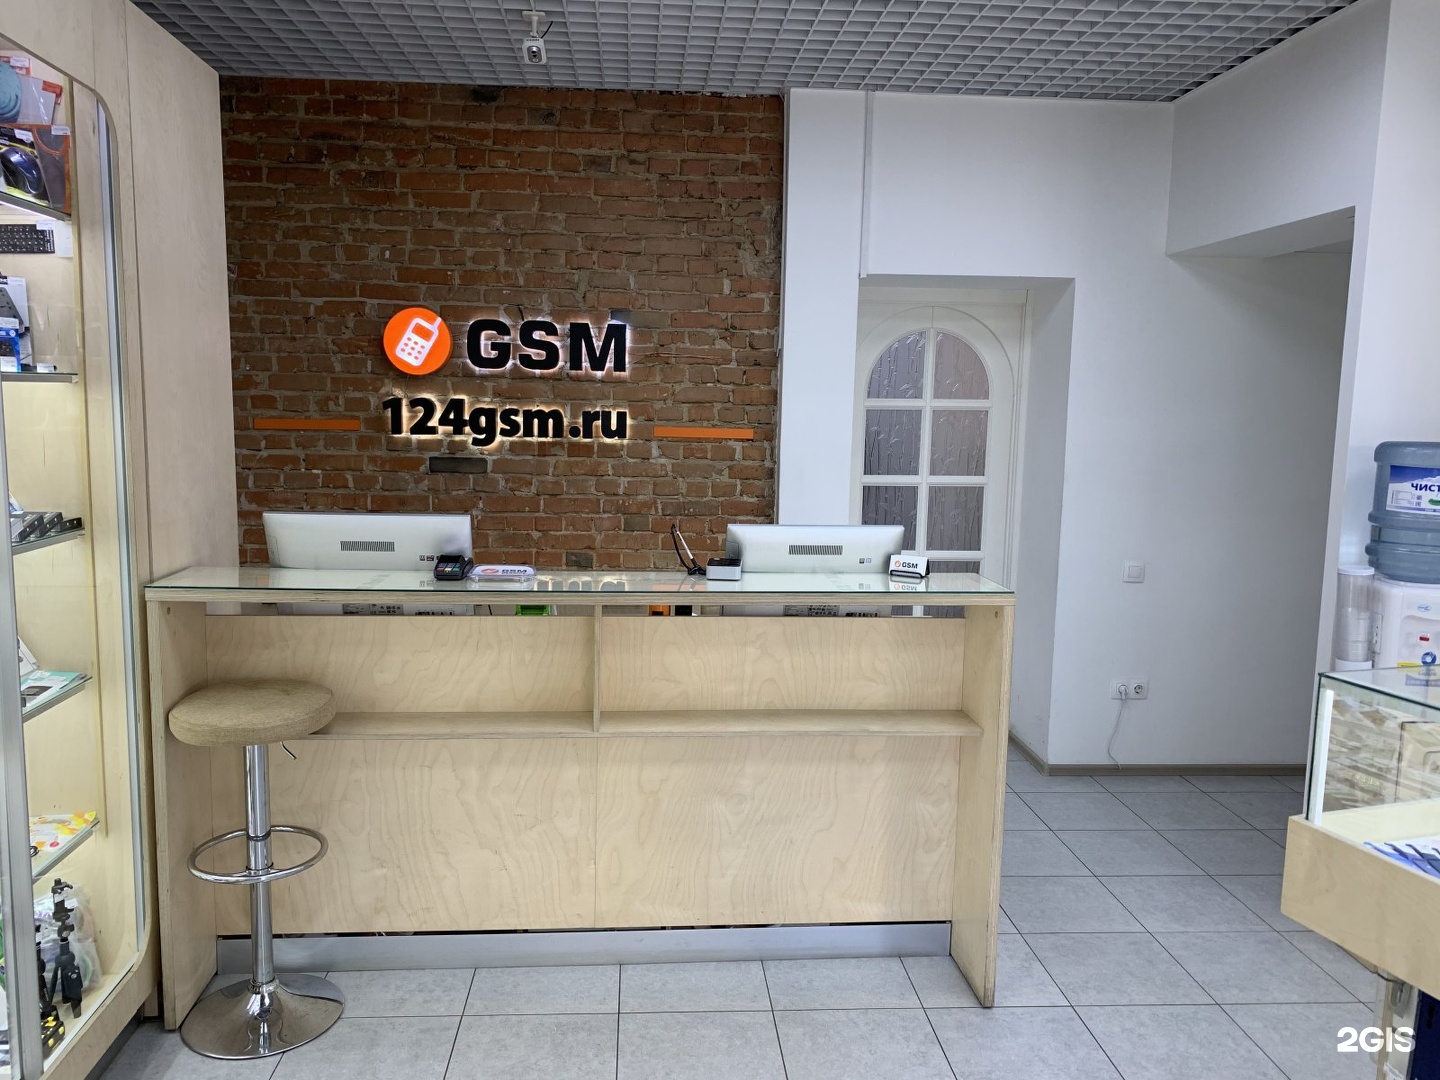 Ул gsm. GSM магазин. GSM service Красноярск. GSM Store СПБ. GSM Уфа.